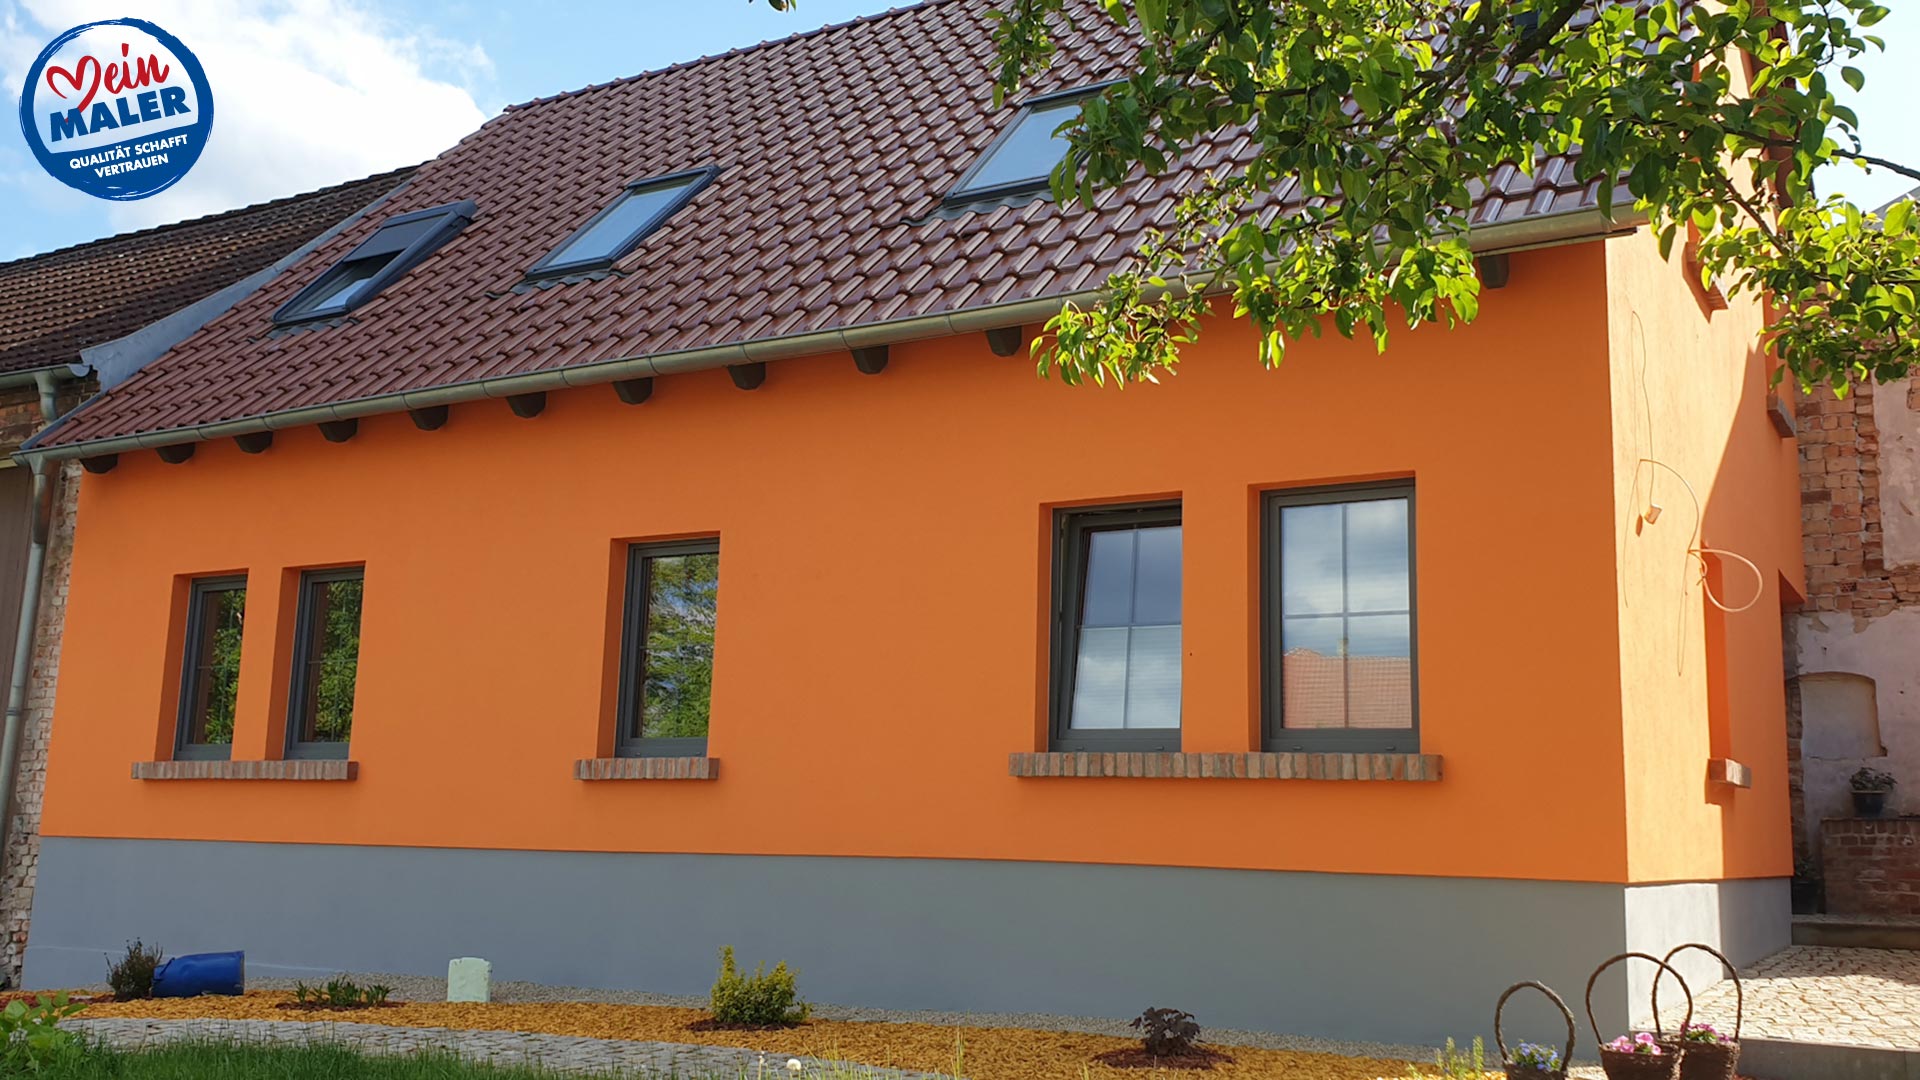 Fassadenputz Fassadenarmierung Fassadengestaltung Orange Fassade MeinMaler Muelenflies